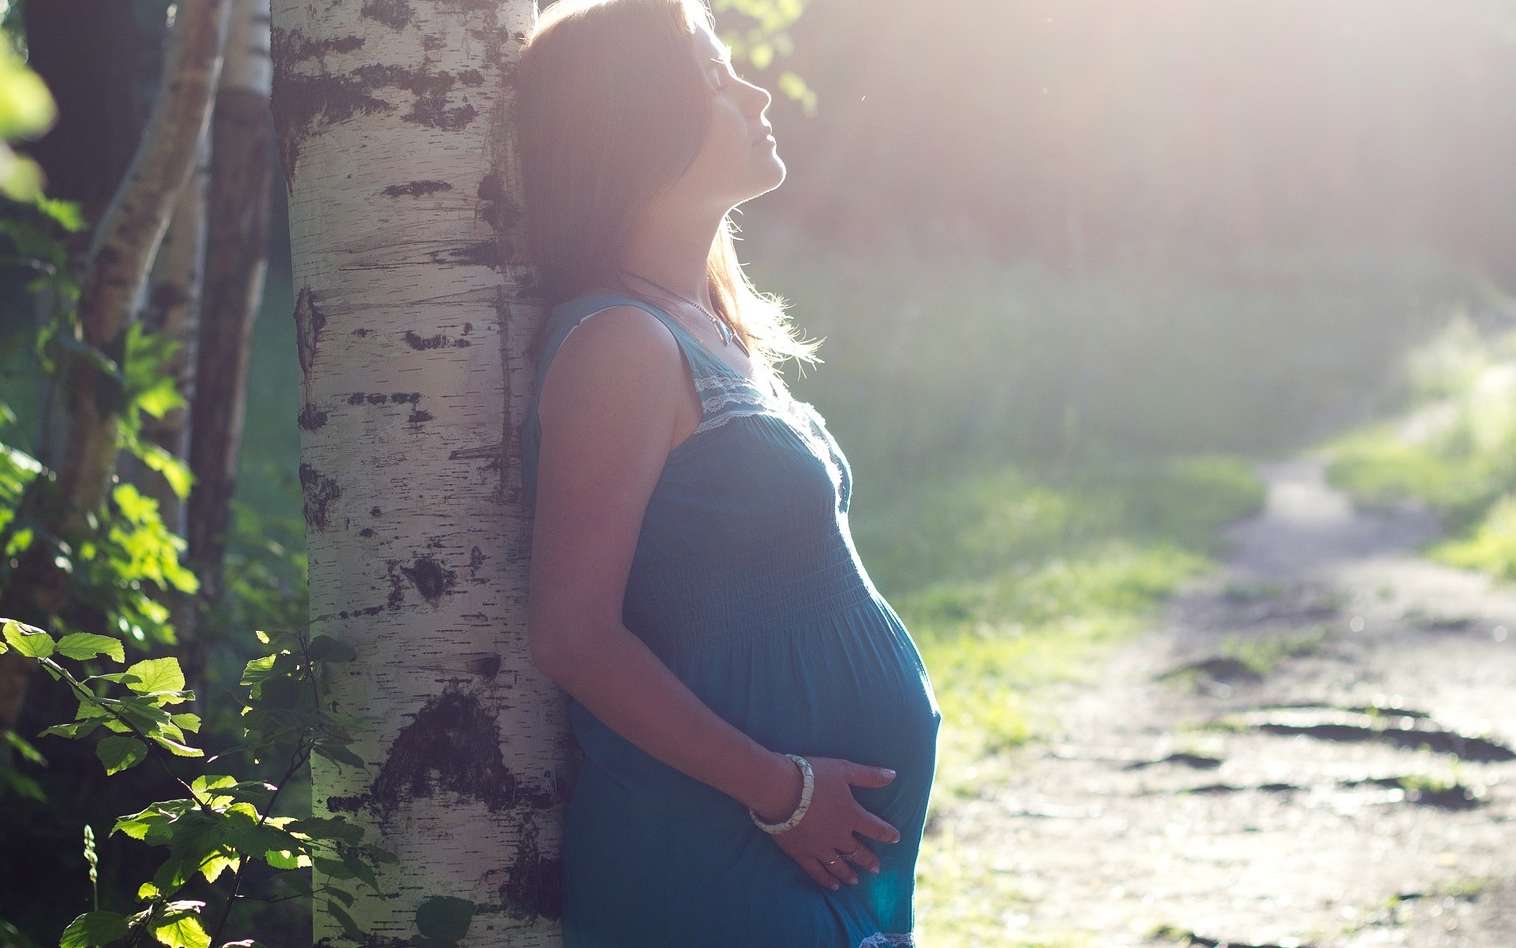 La grossesse entraînerait des changements dans la structure et la fonction cérébrale. © Egor105, Pixabay